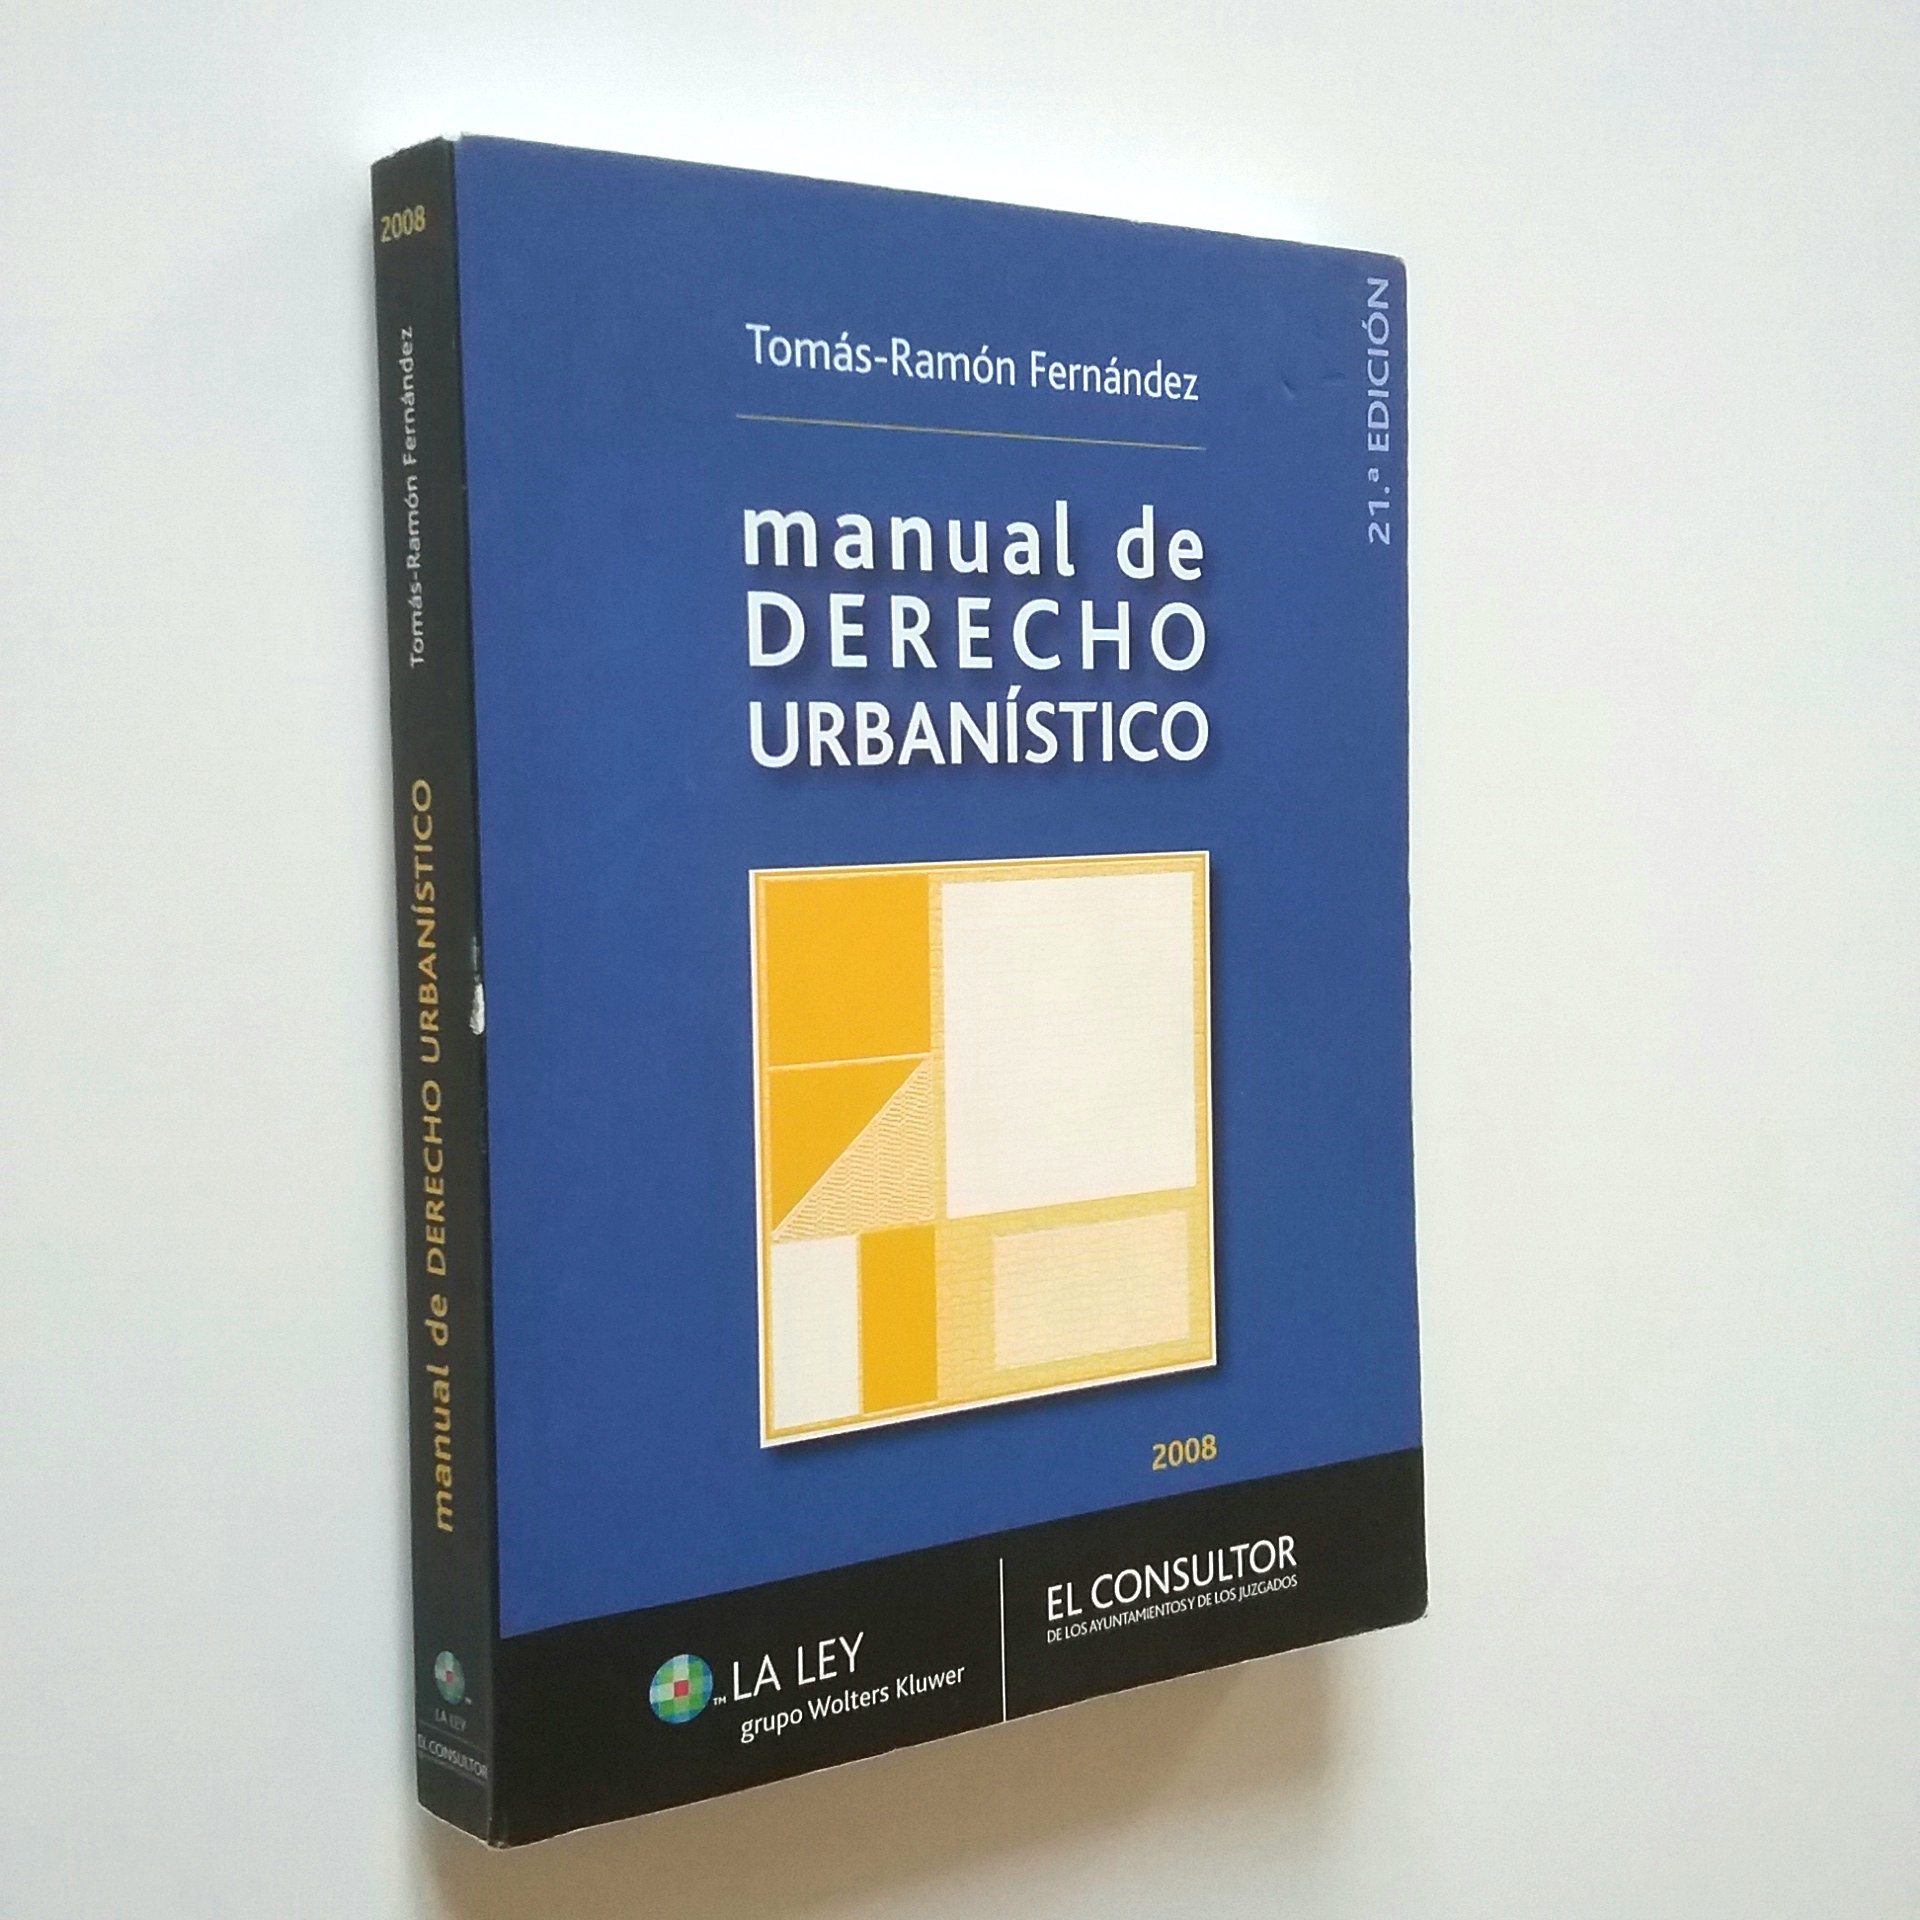 Manual de Derecho urbanístico - Tomás-Ramón Fernández